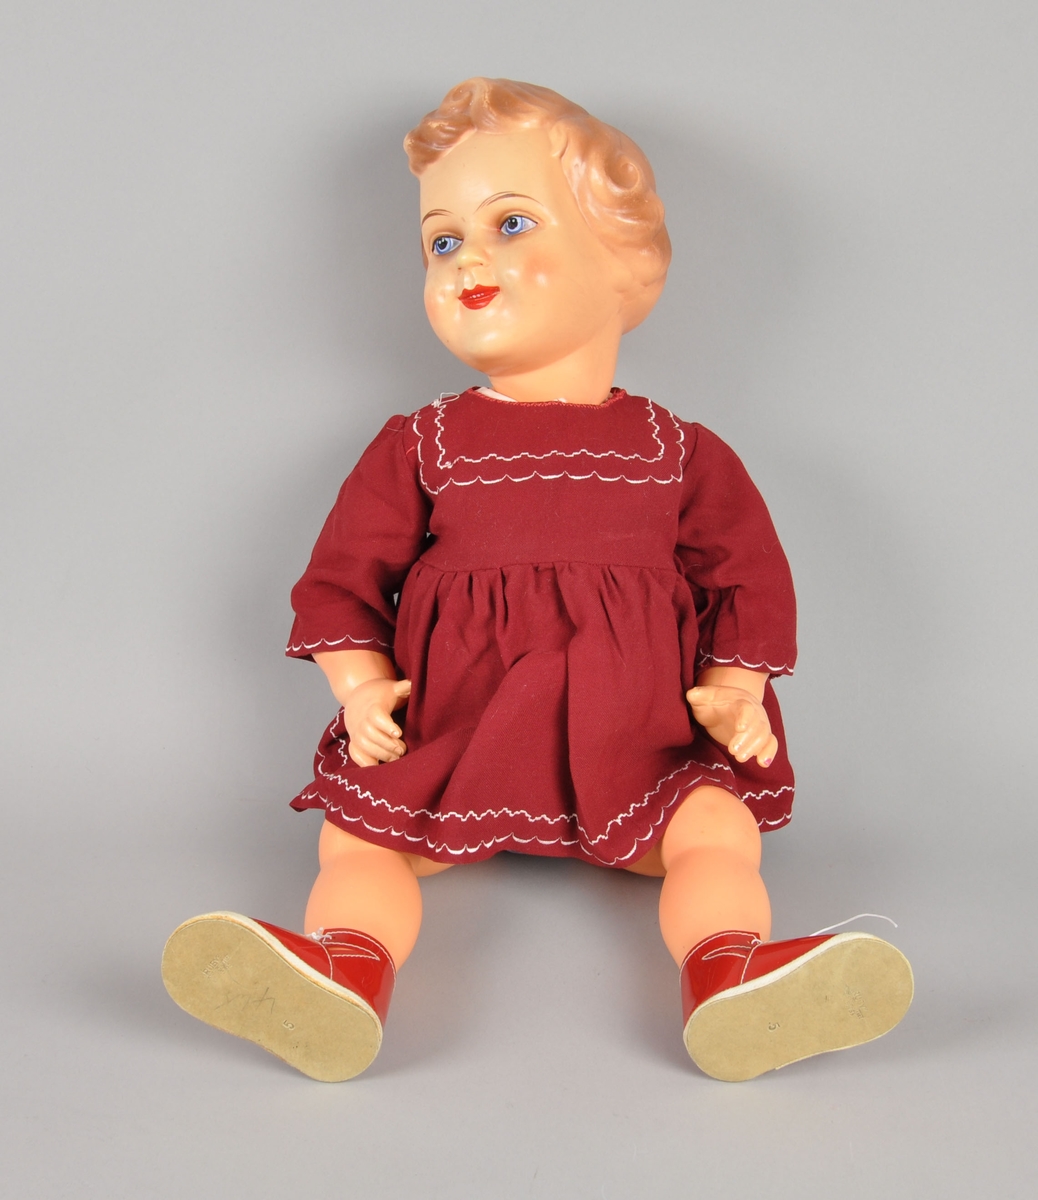 Dukke av celluloid. Dukken gikk under navnet "Gro-dukken). Dukken har påmalte øyne, munn, hår og kinn. Den er kledd i kjole, bukse, sko og undertøy.